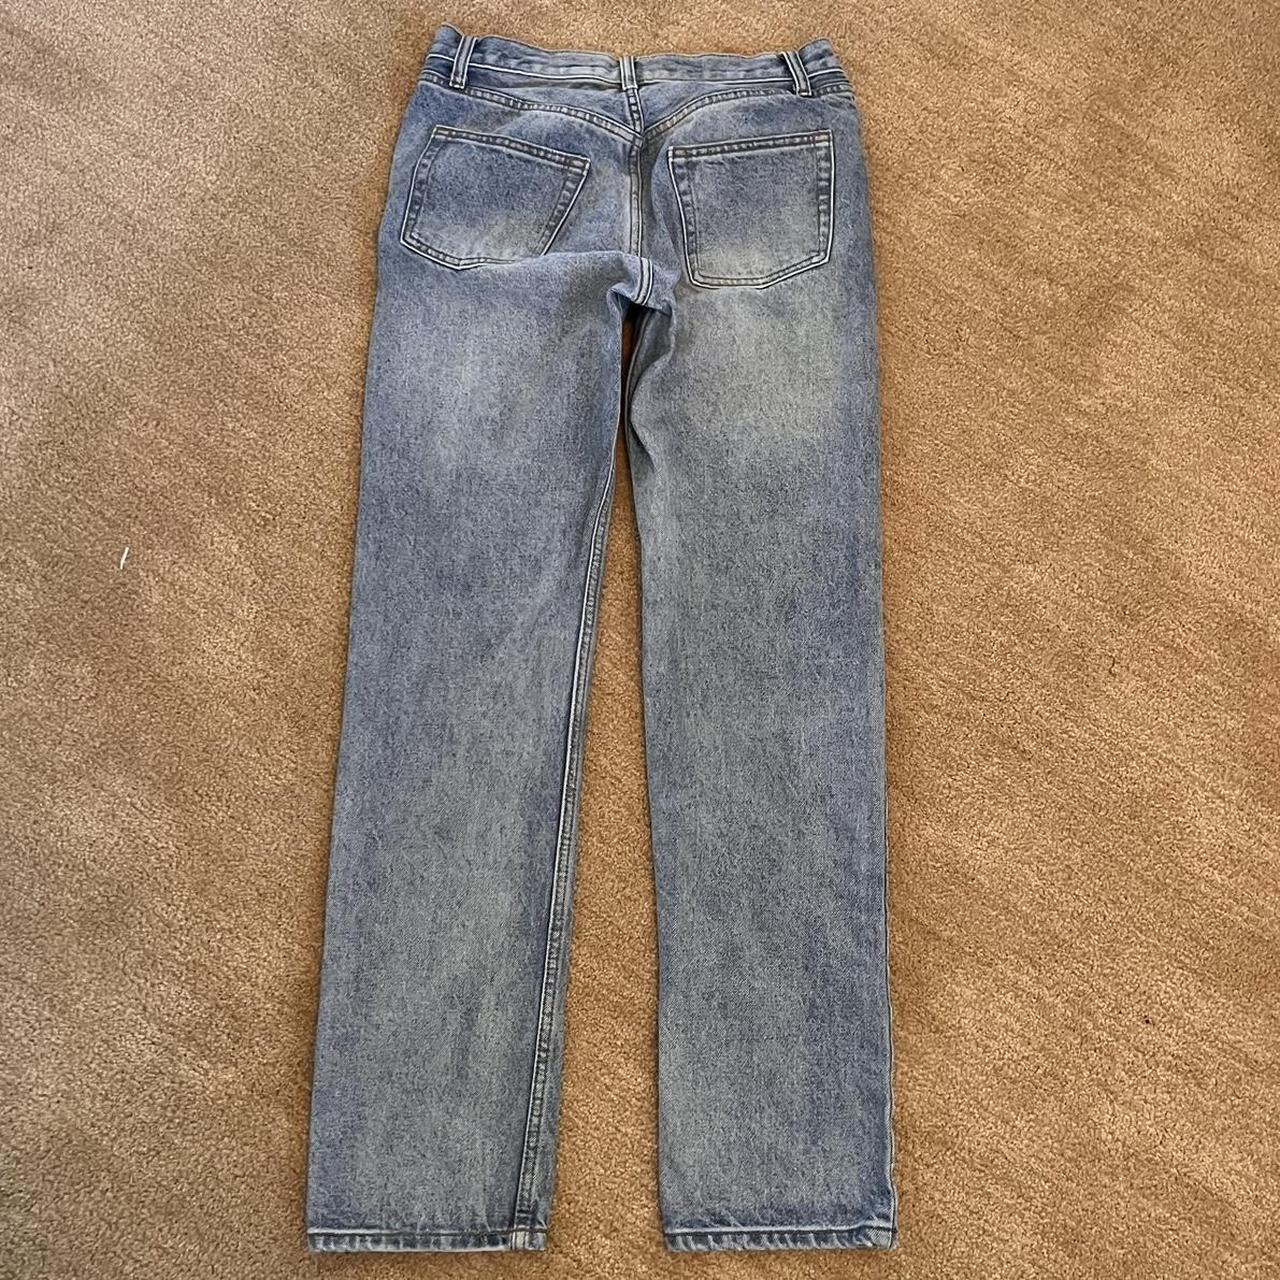 Brandy Melville John Galt Jeans in Size... - Depop